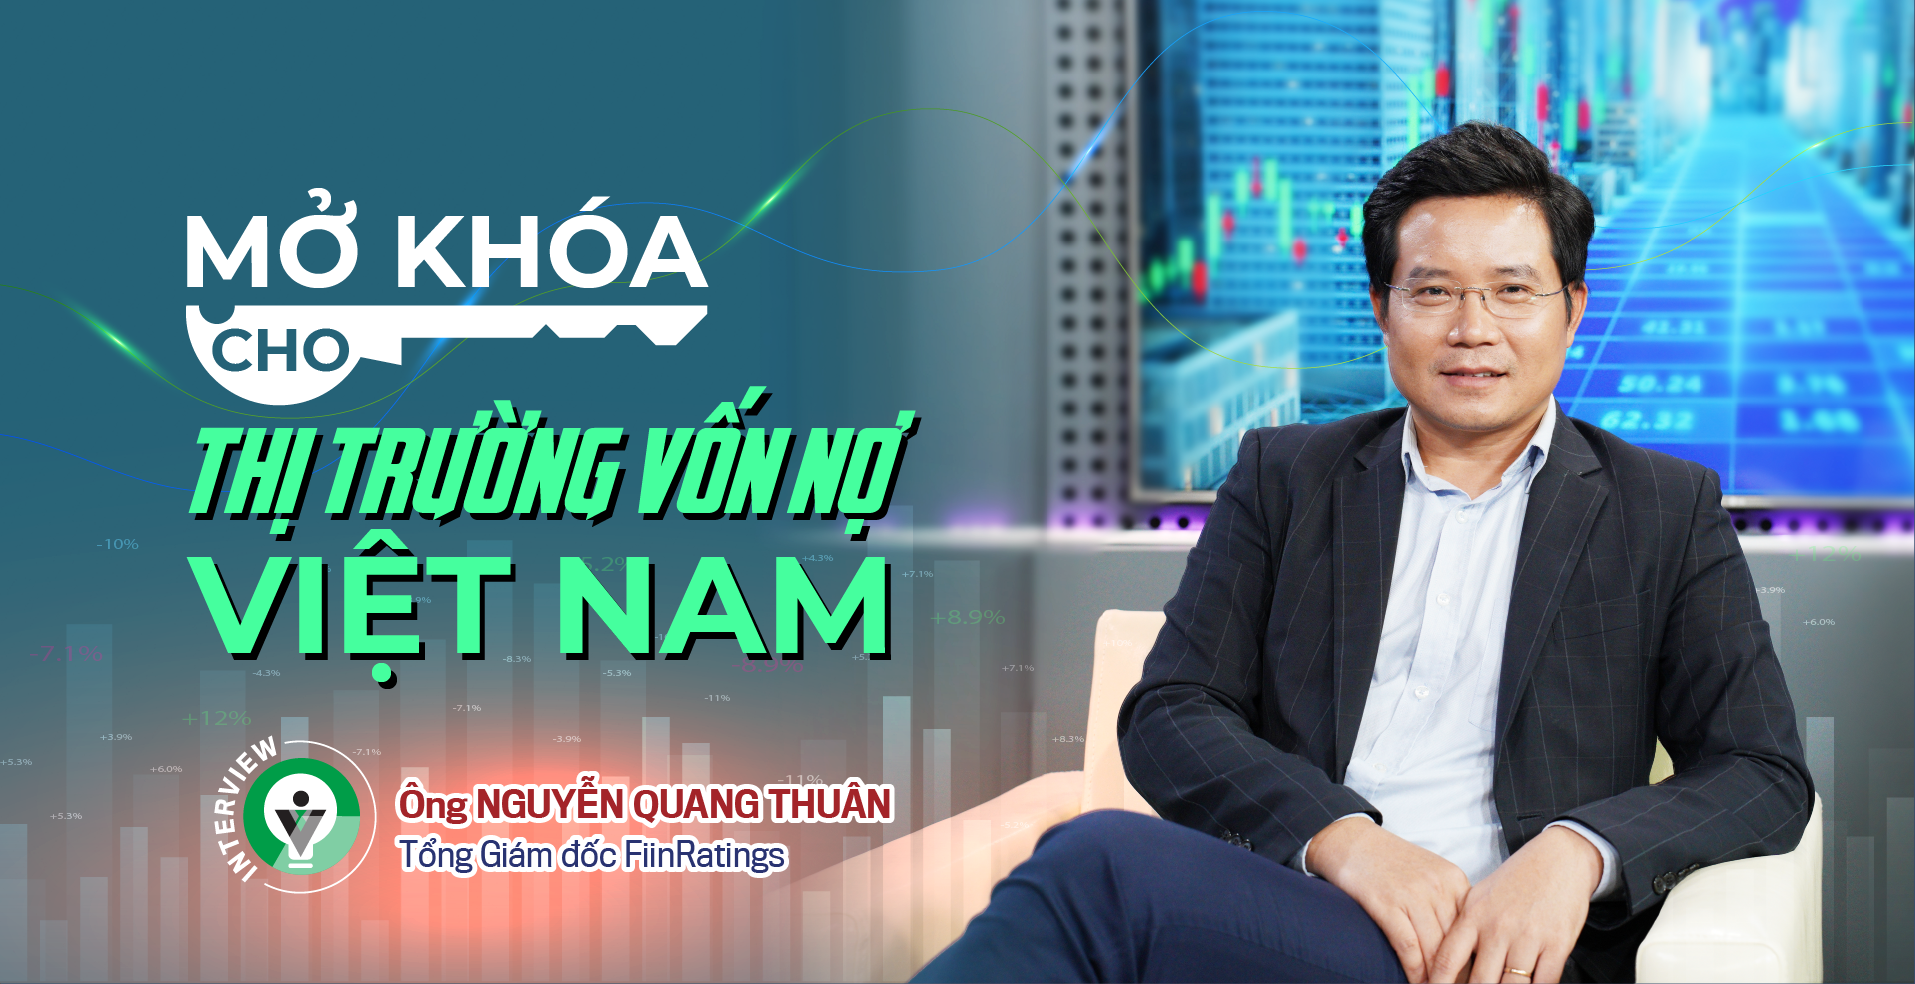 Mở khoá cho thị trường vốn nợ Việt Nam - Ảnh 1